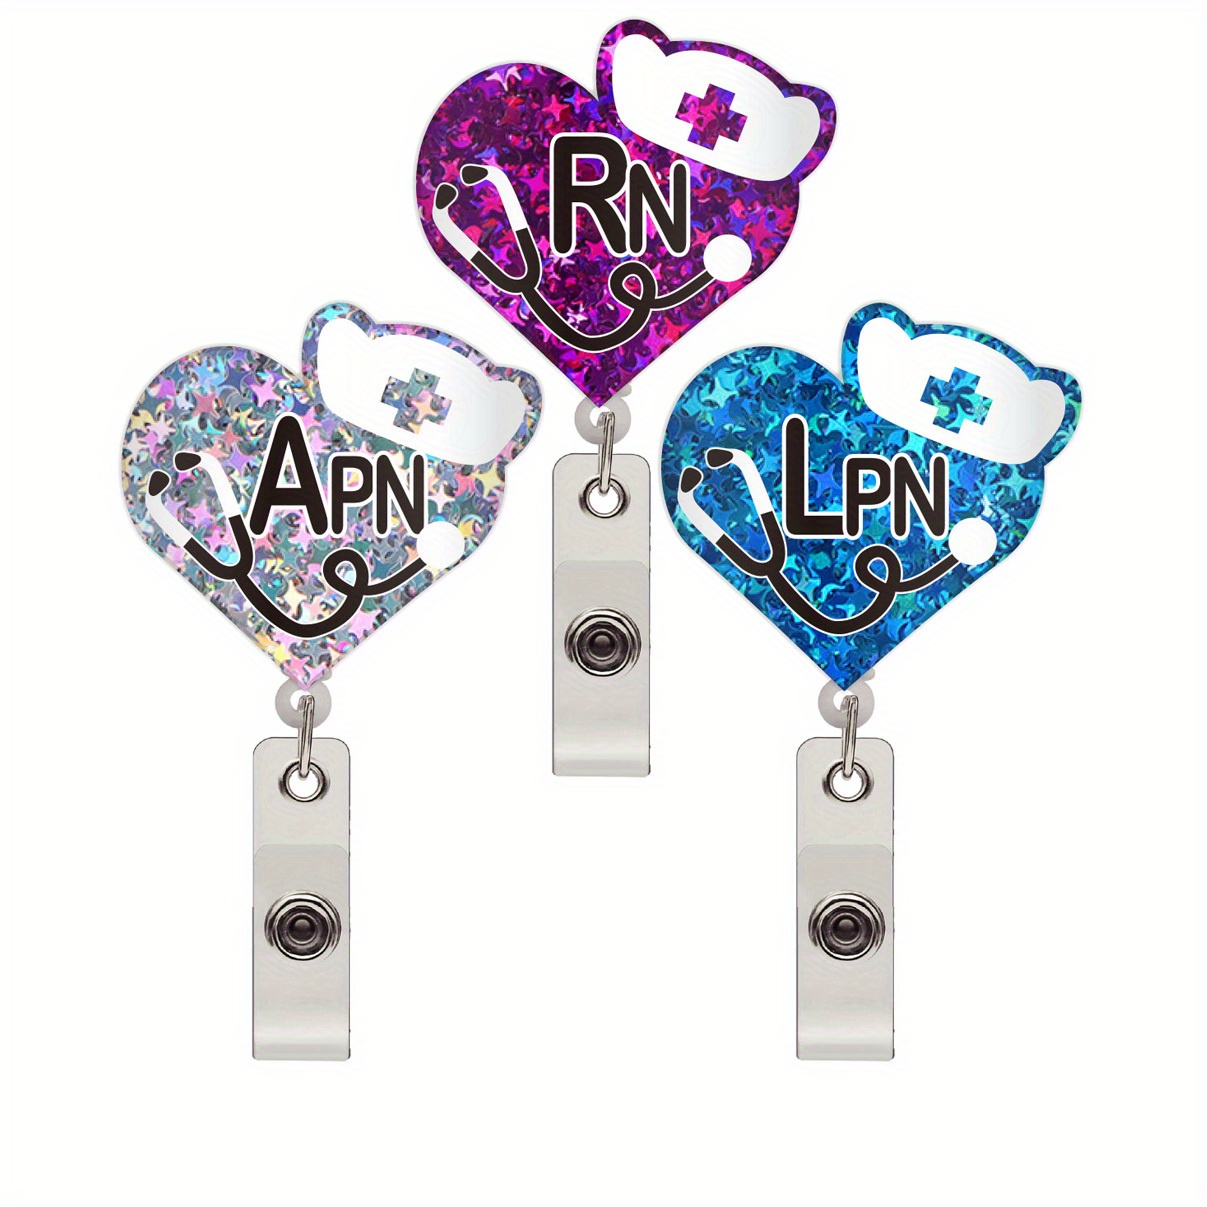 LVN Badge Reel - LVN Badge Holder - Nurse Gift - Nurse Graduation Gift - LVN Gift - Licensed Vocational Nurse